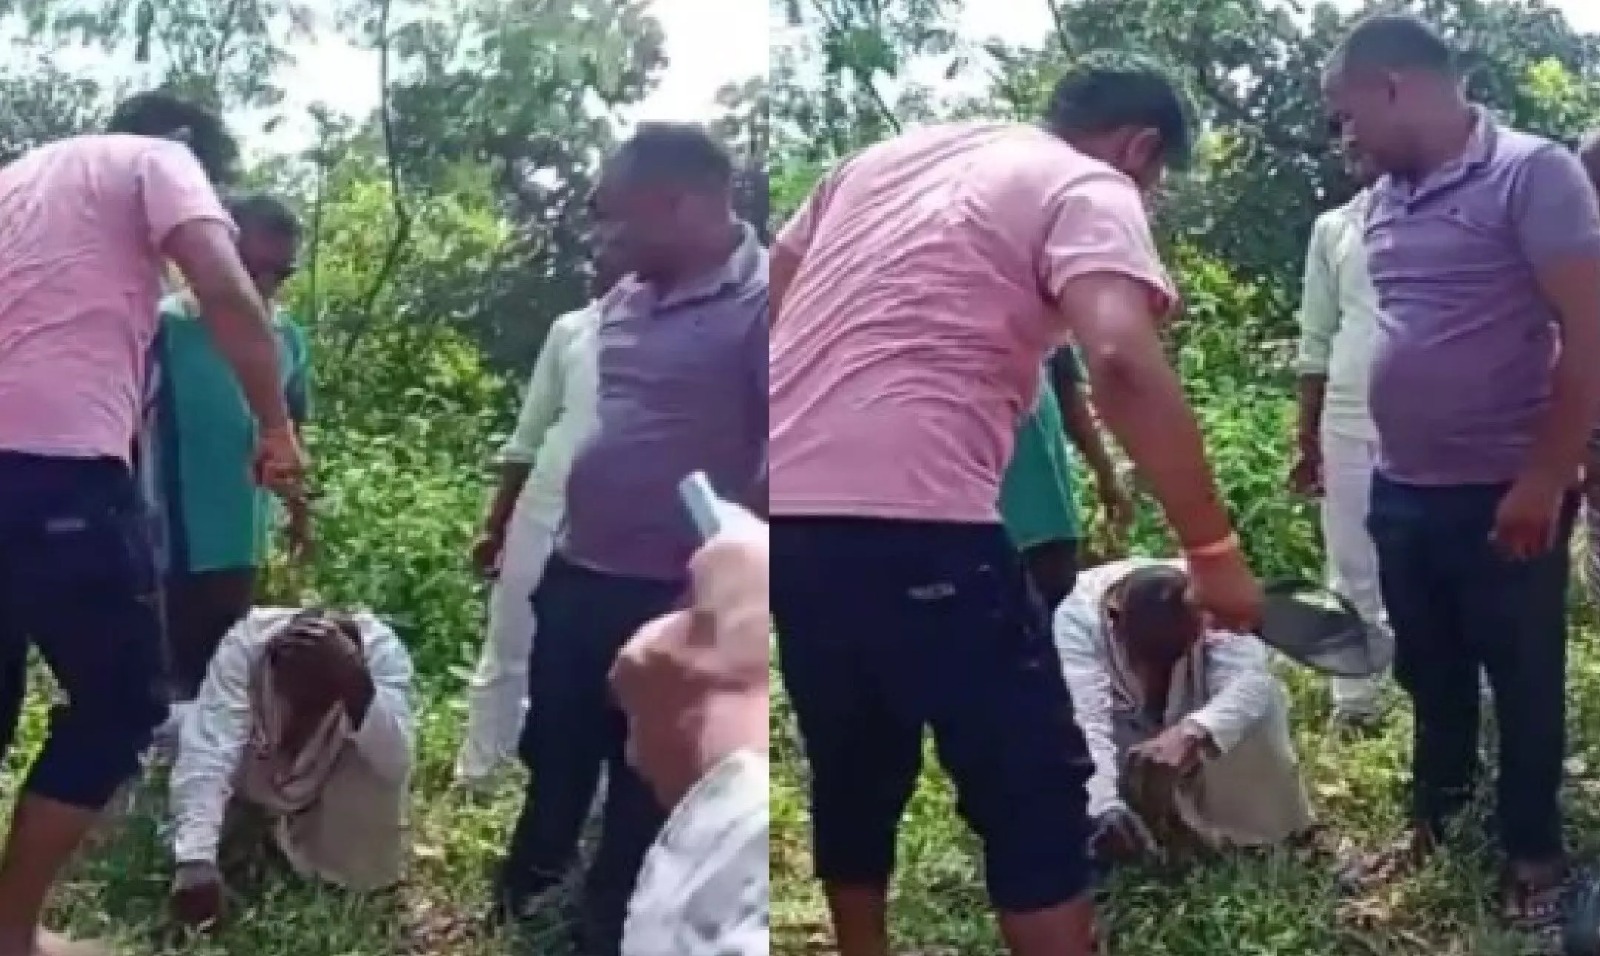 MP News : भाजपा नेता ने आदिवासी युवक को चप्पल से पीटा, हुआ वीडियो वायरल, एफआईआर दर्ज...